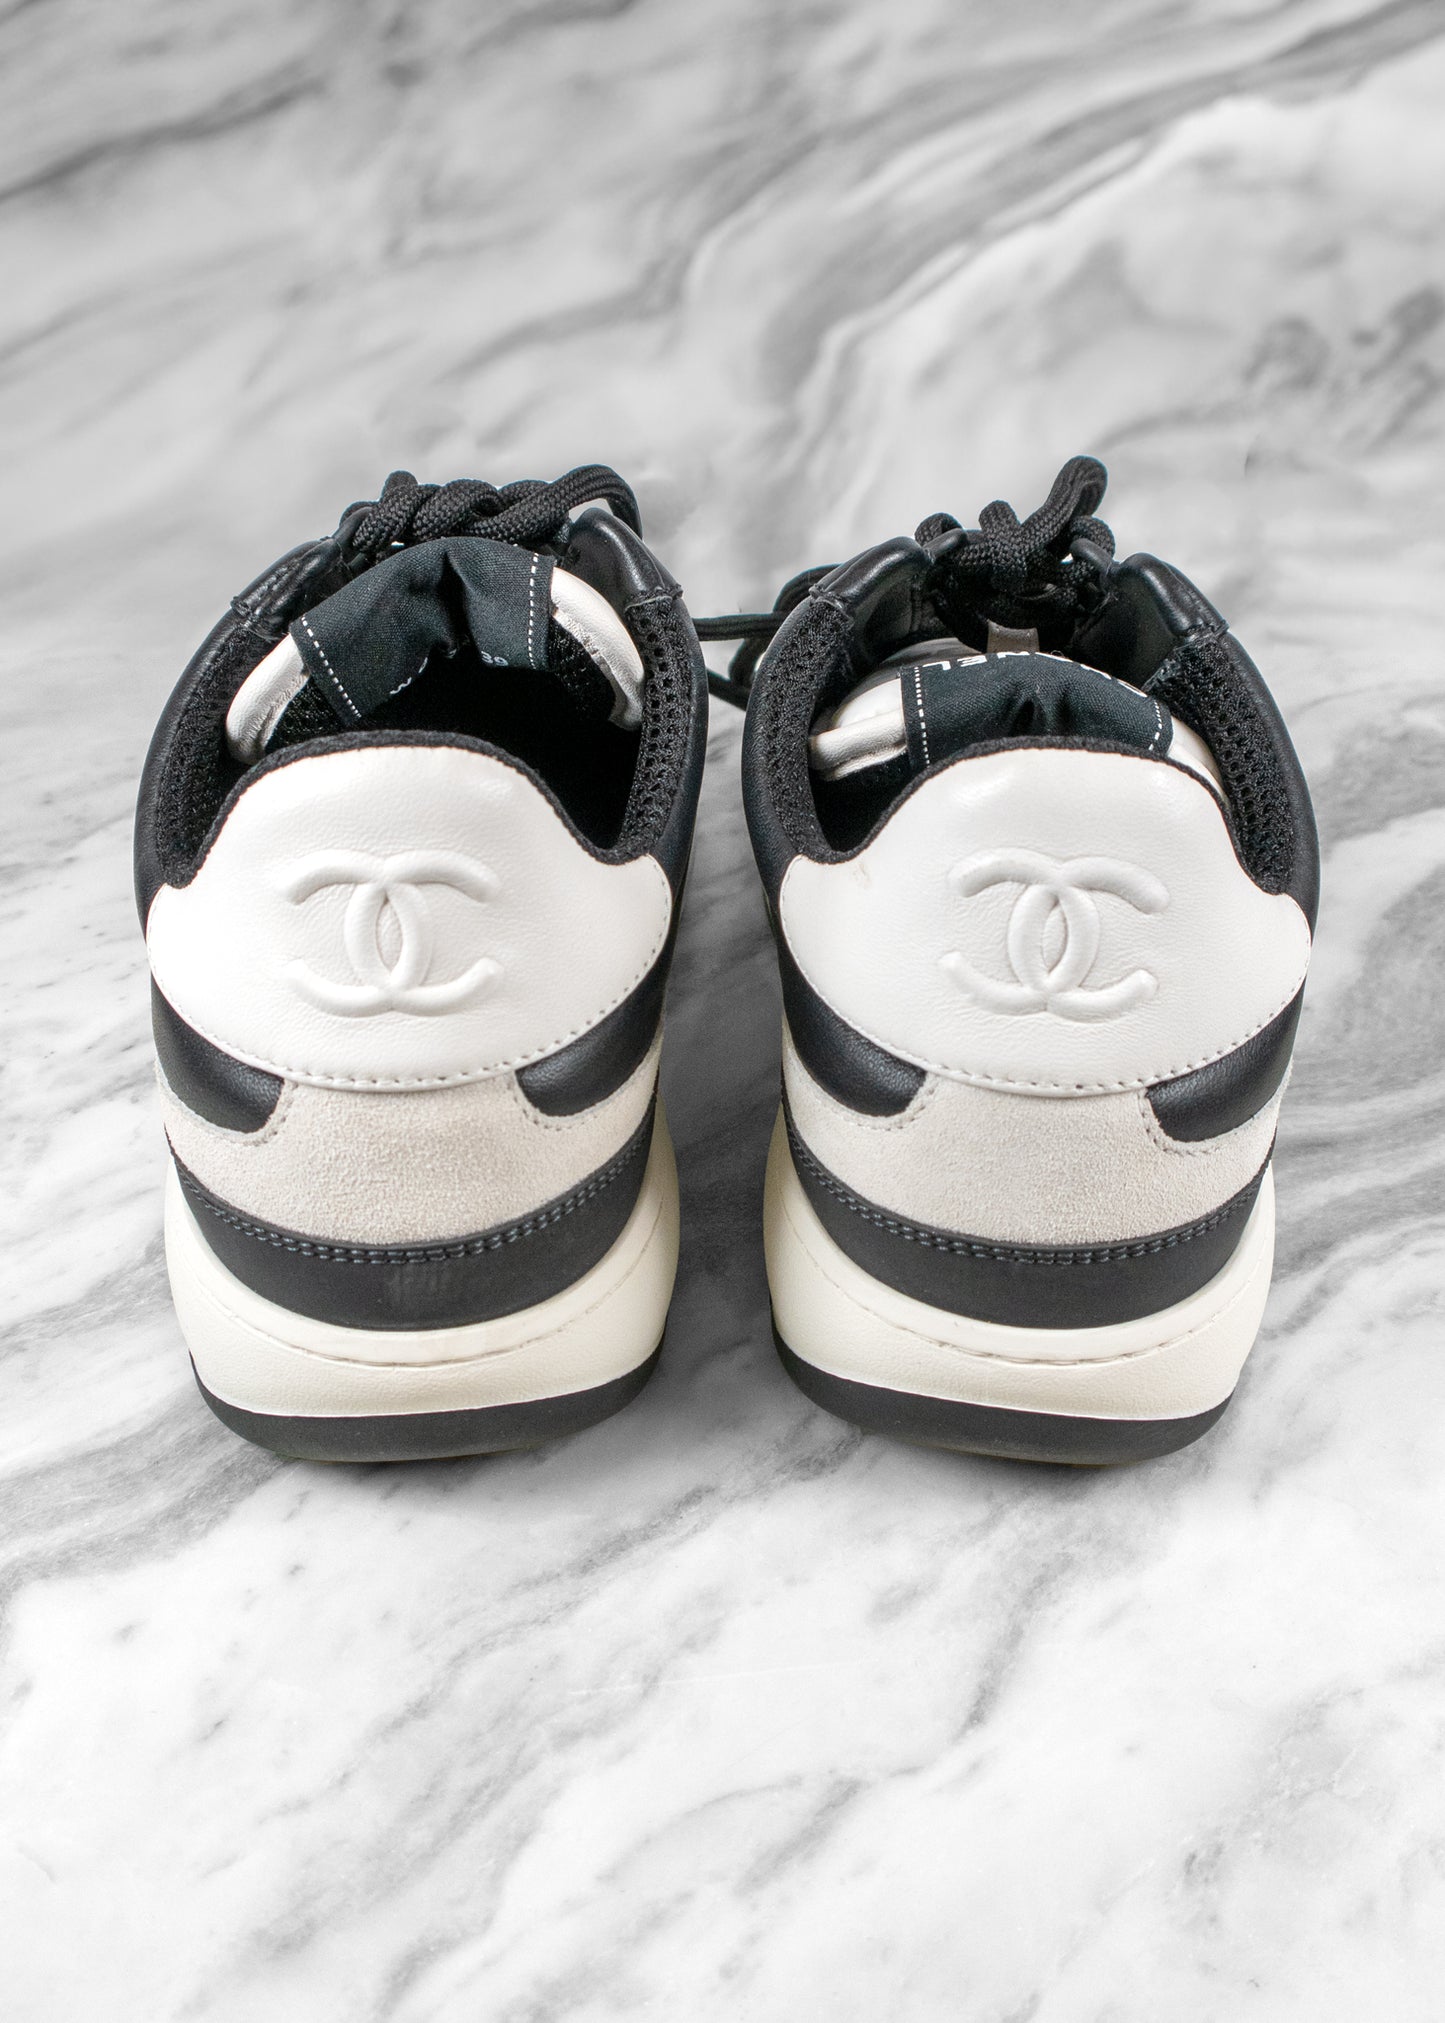 Chanel Lambskin Suede Calfskin Sneakers